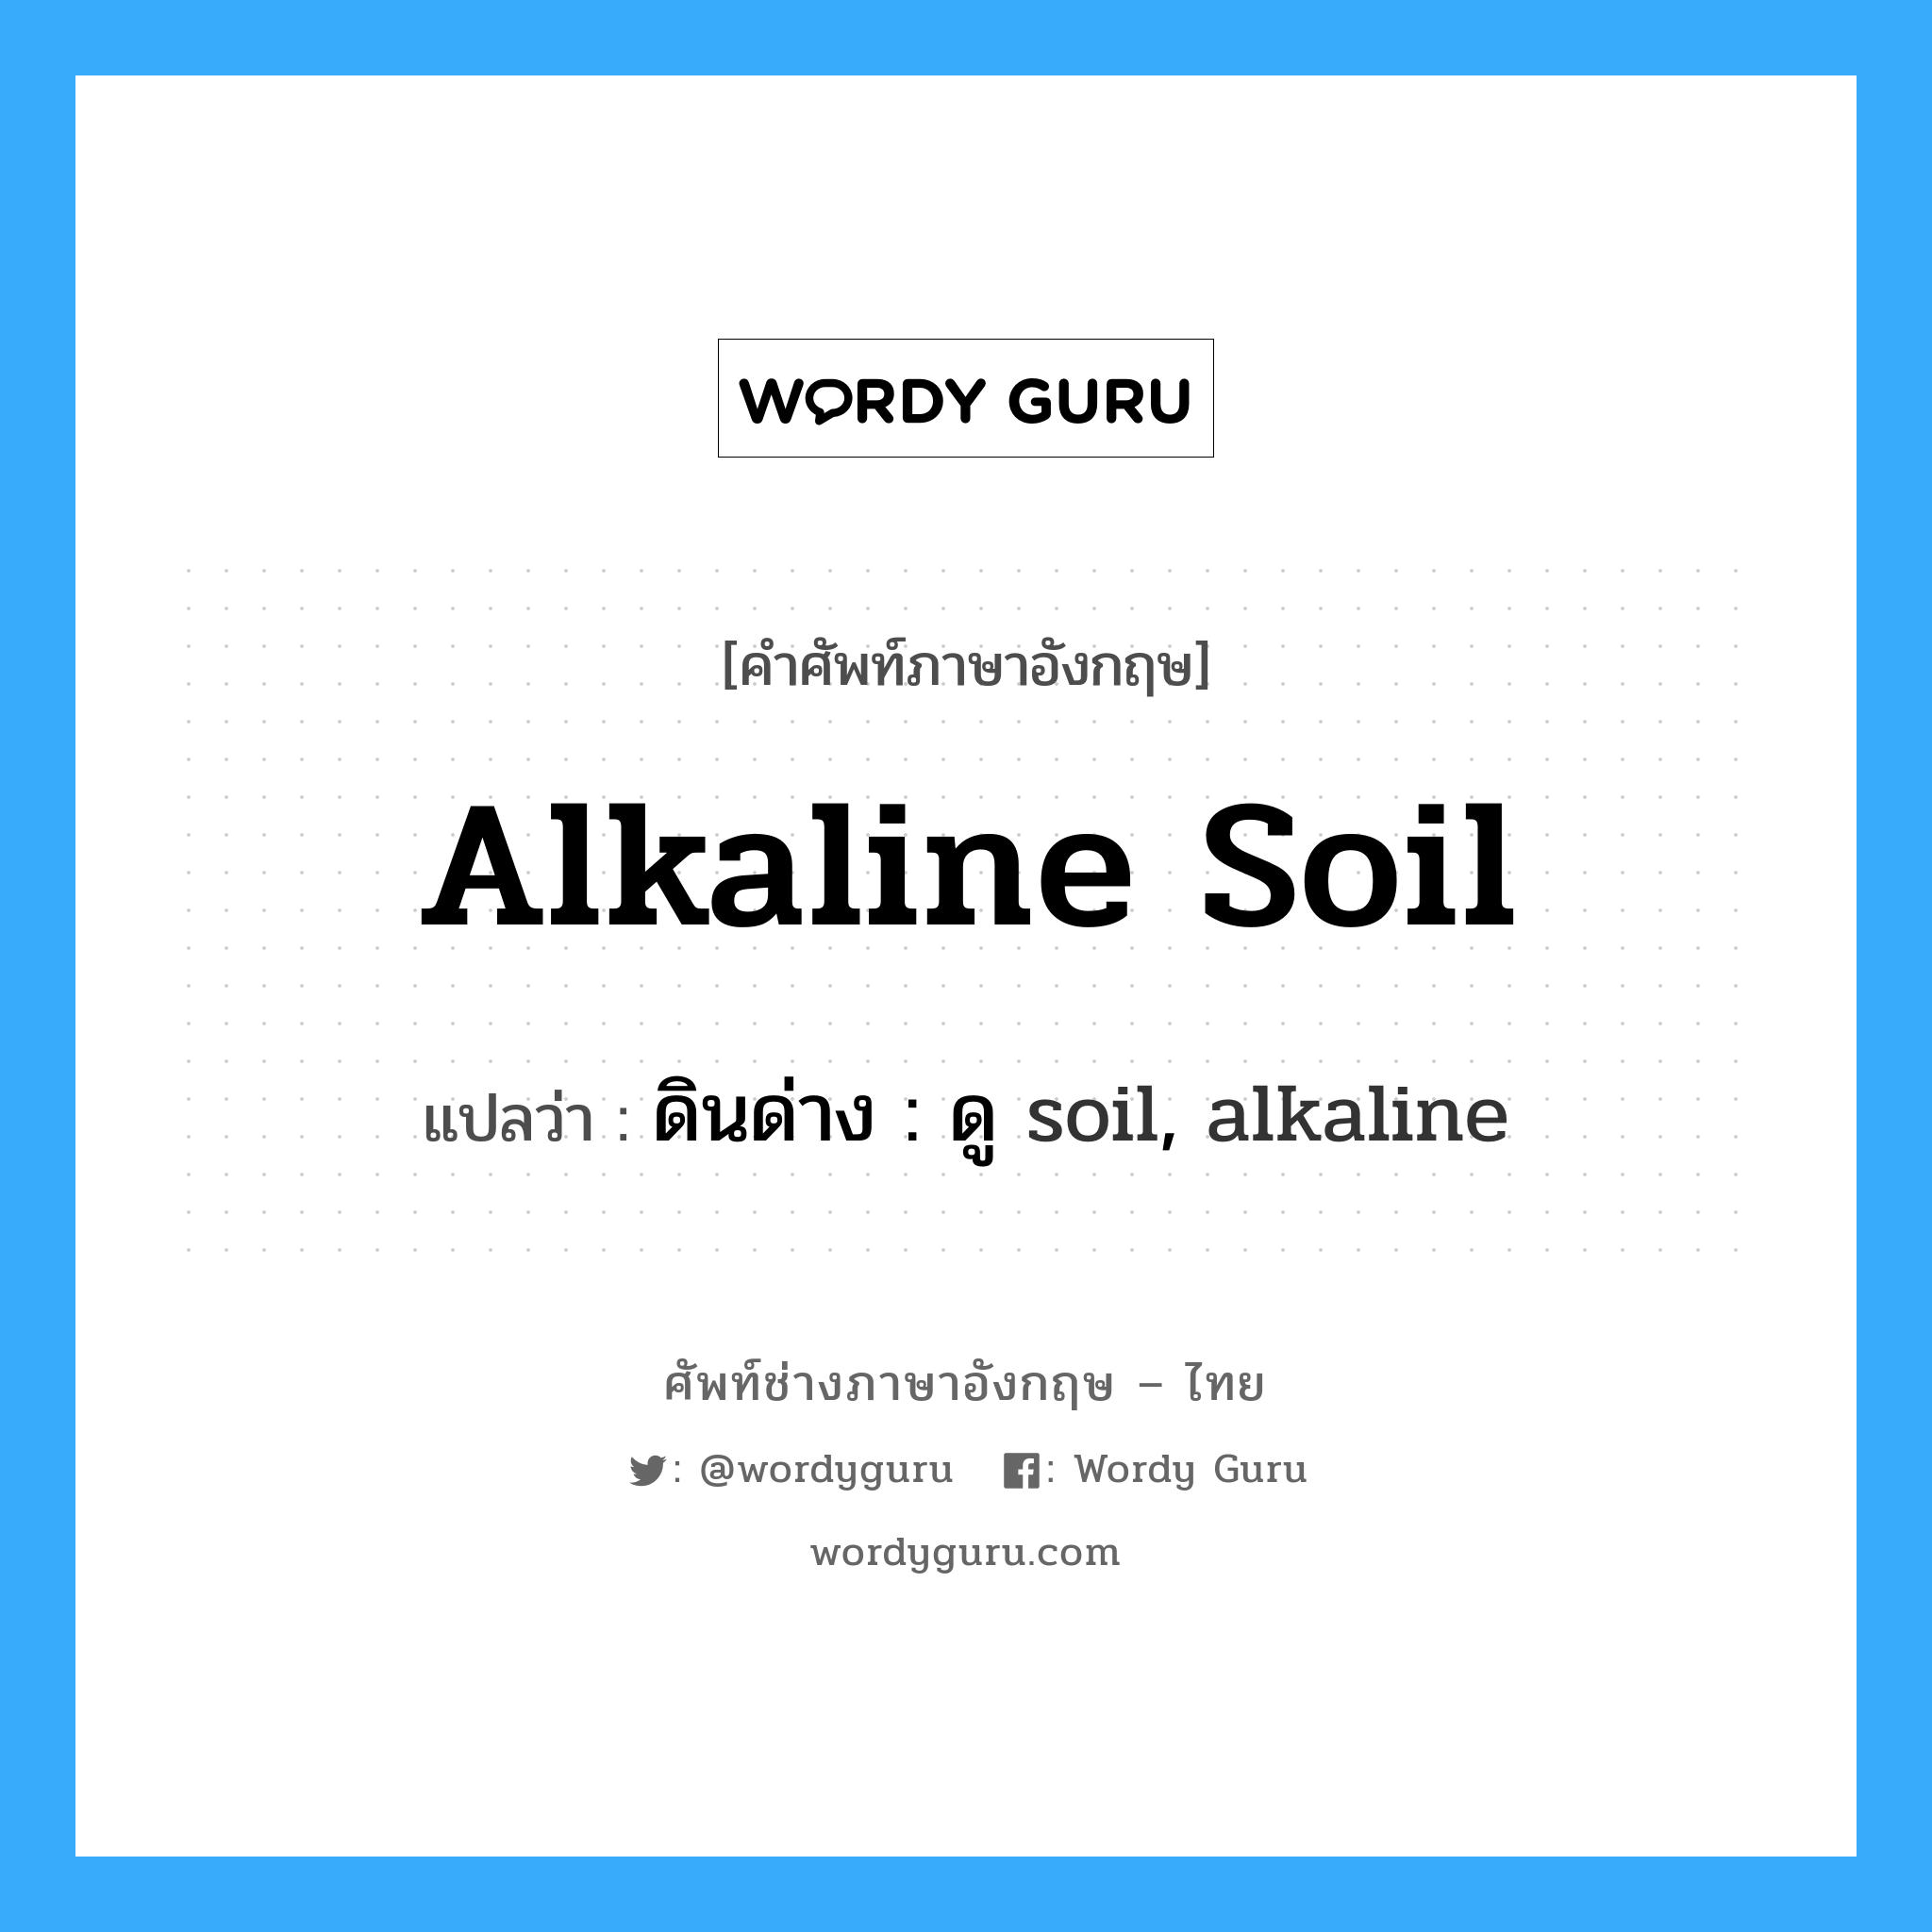 alkaline soil แปลว่า?, คำศัพท์ช่างภาษาอังกฤษ - ไทย alkaline soil คำศัพท์ภาษาอังกฤษ alkaline soil แปลว่า ดินด่าง : ดู soil, alkaline